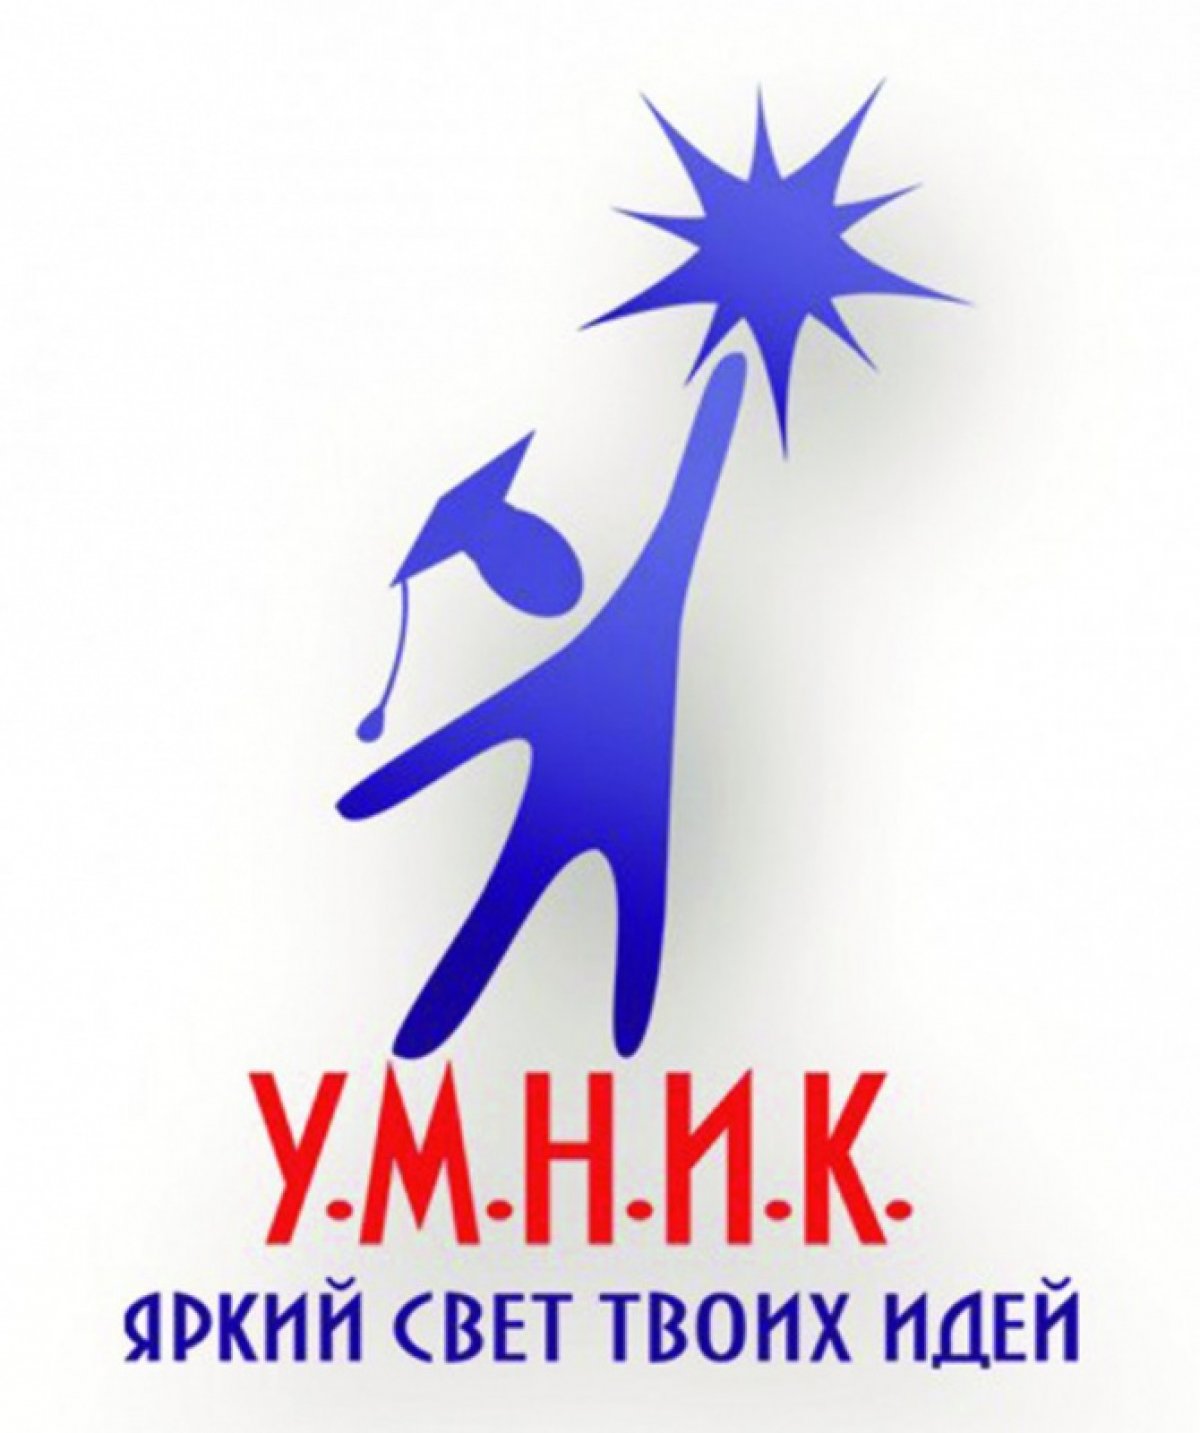 До 30 сентября открыт приём заявок на конкурс "УМНИК-2019"